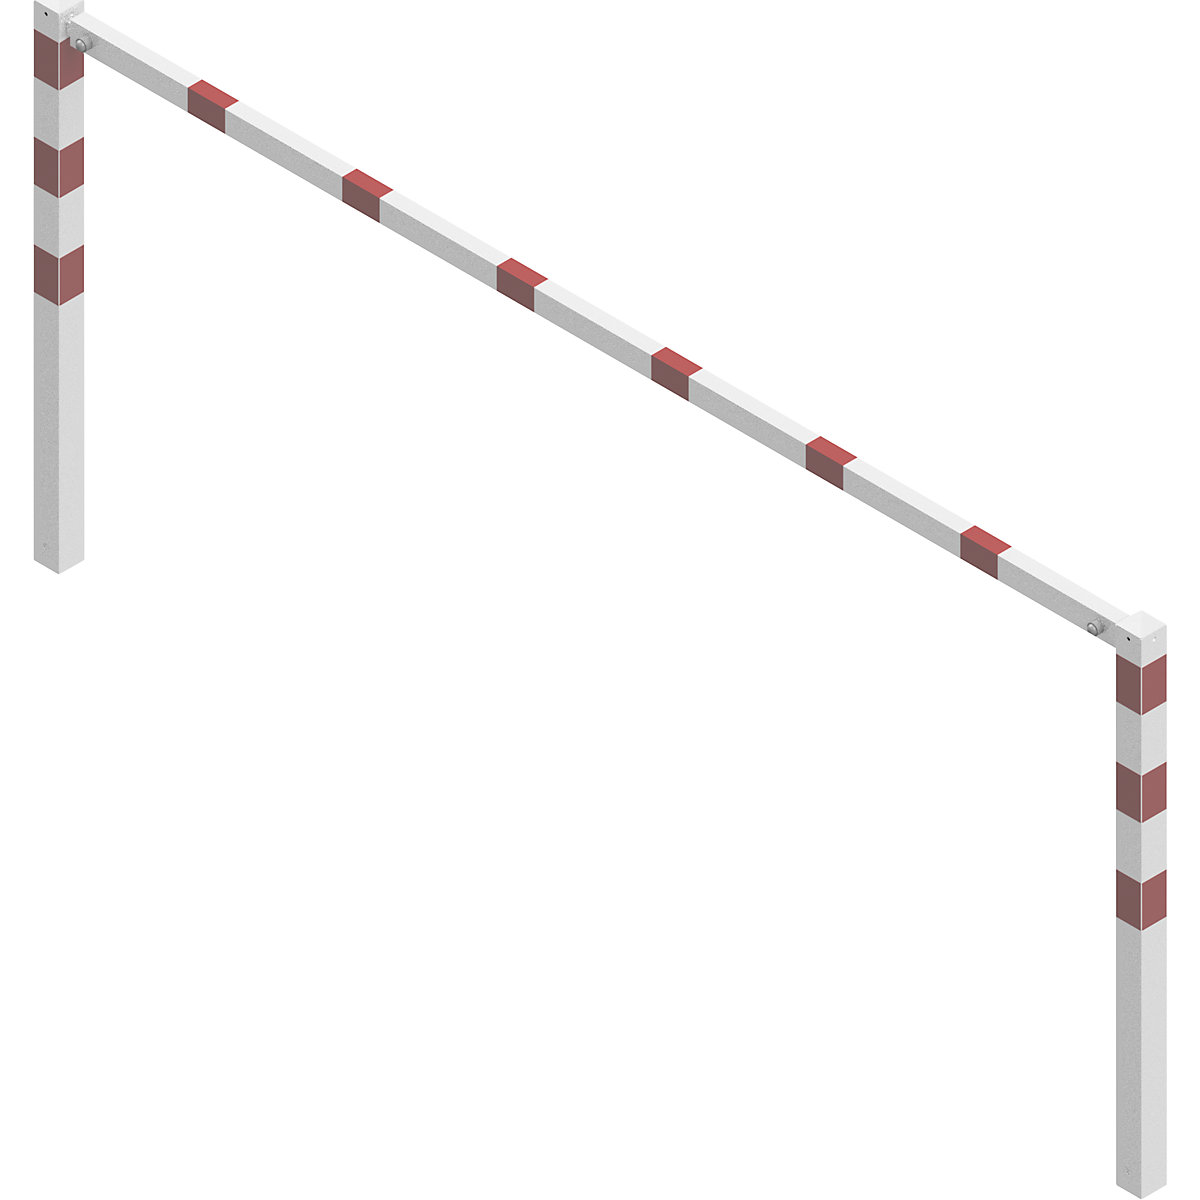 Barrière à visser, avec barre supérieure, blanc avec bandes réfléchissantes rouges, largeur 3000 mm-2